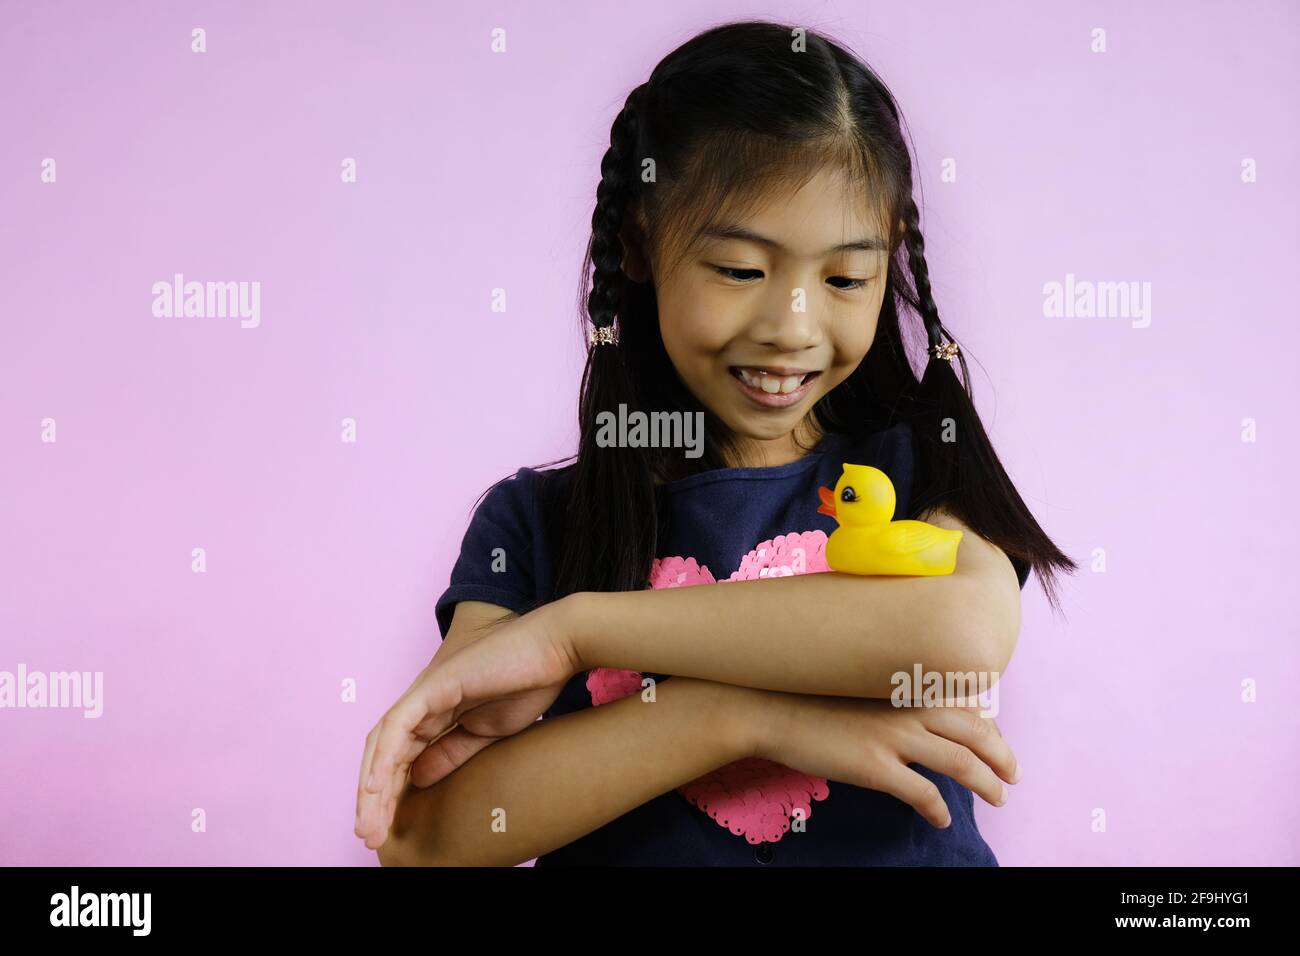 Une jeune fille asiatique mignonne joue avec joie avec son petit canard en caoutchouc jaune, l'équilibrant sur son coude avec ses bras croisés, souriant et amusant. Banque D'Images